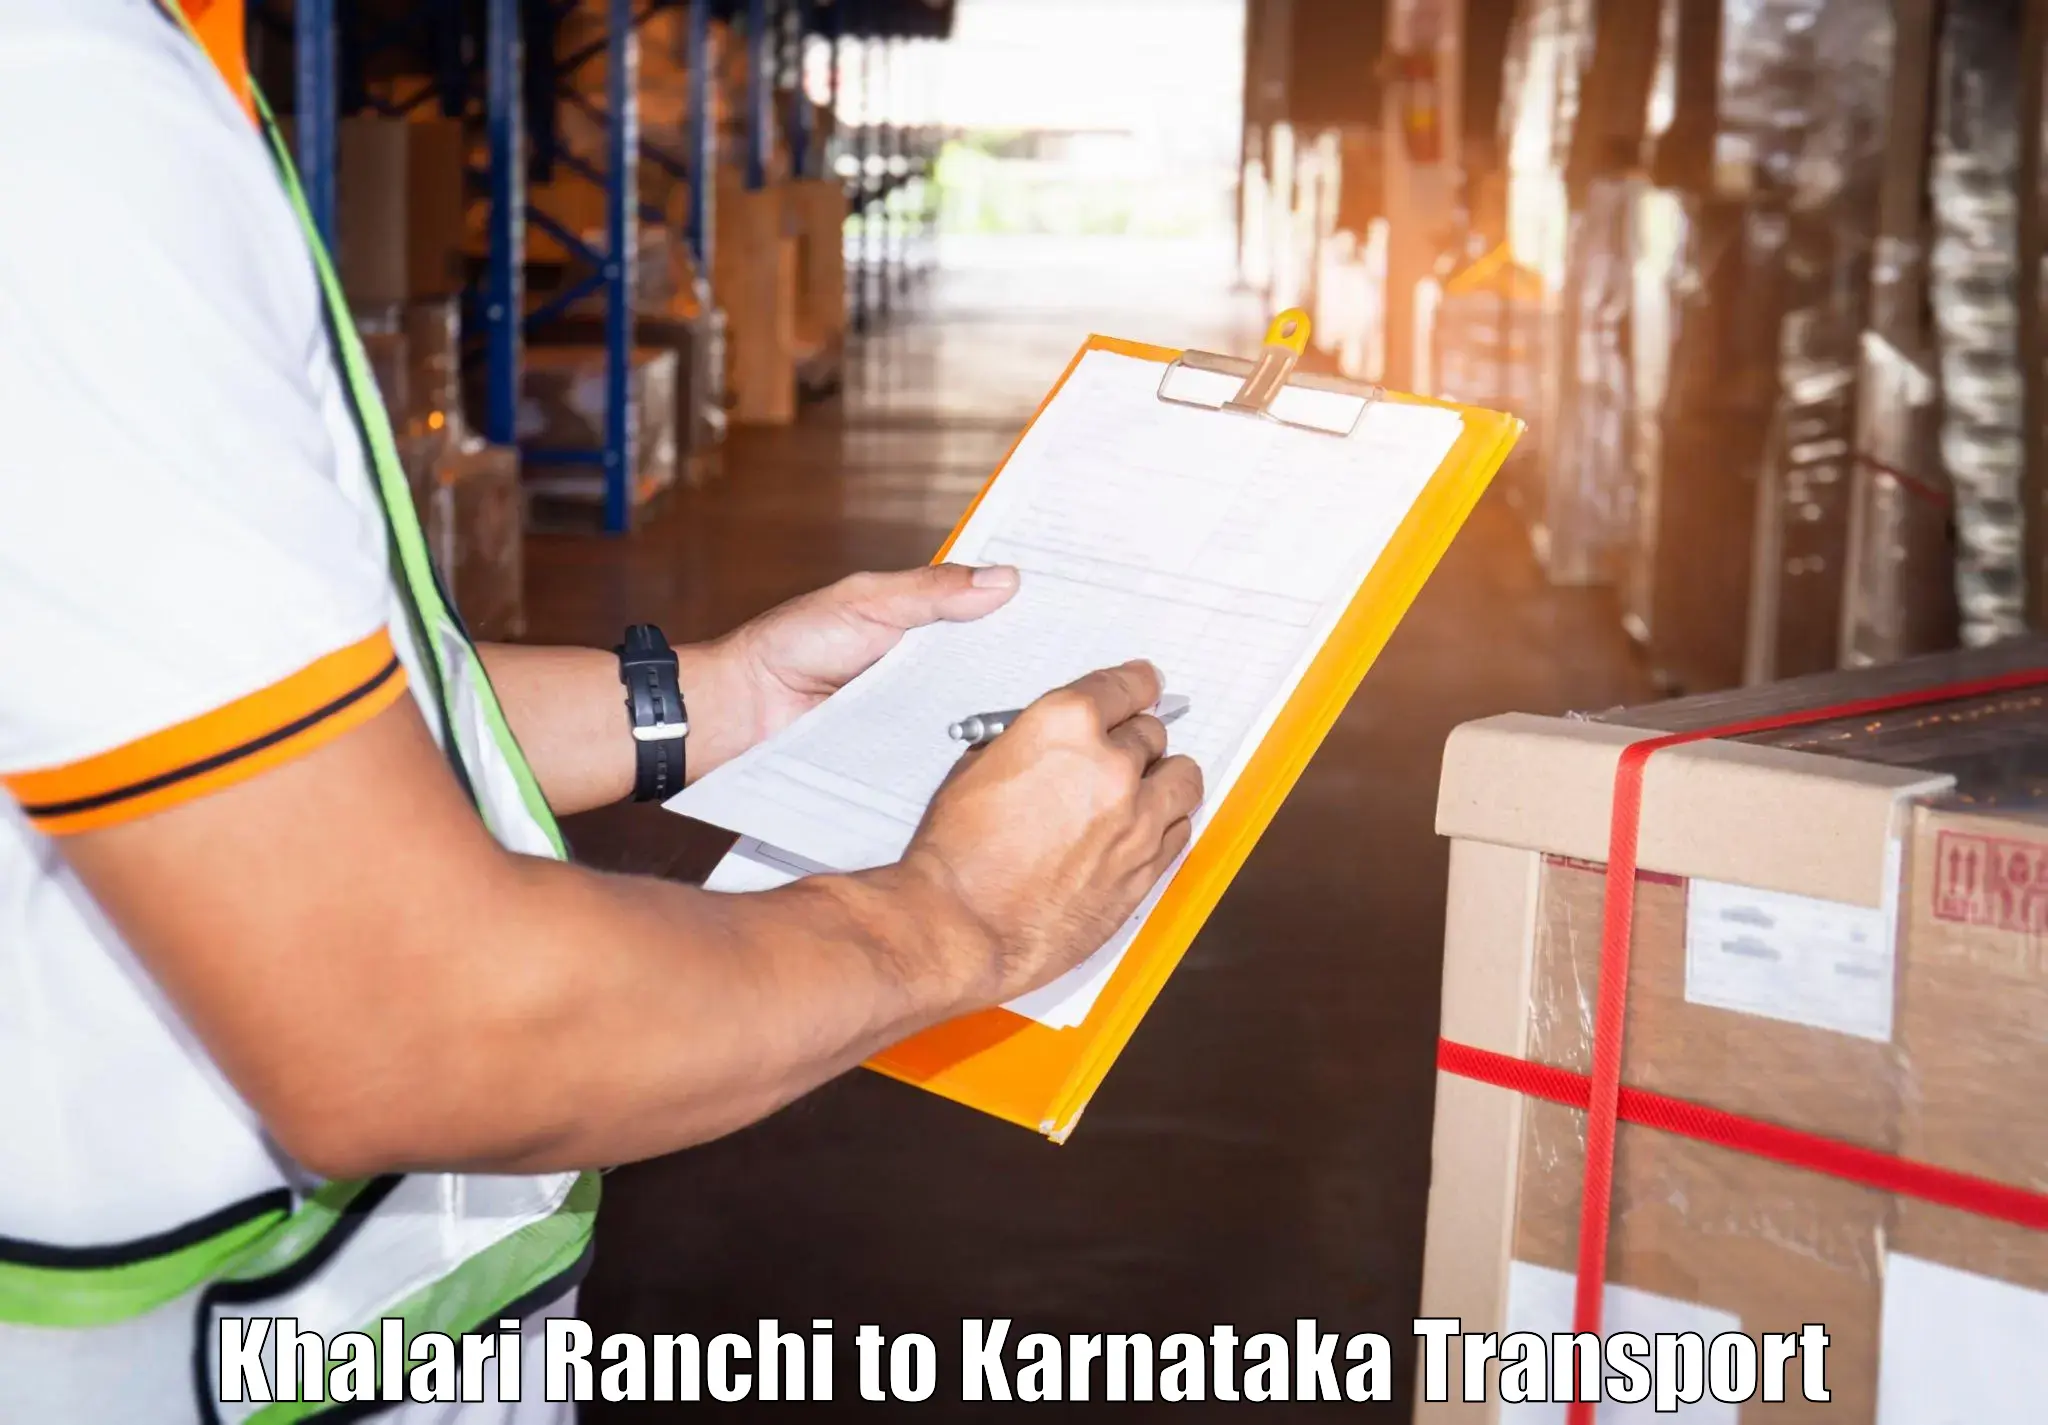 Transport in sharing Khalari Ranchi to Banavara